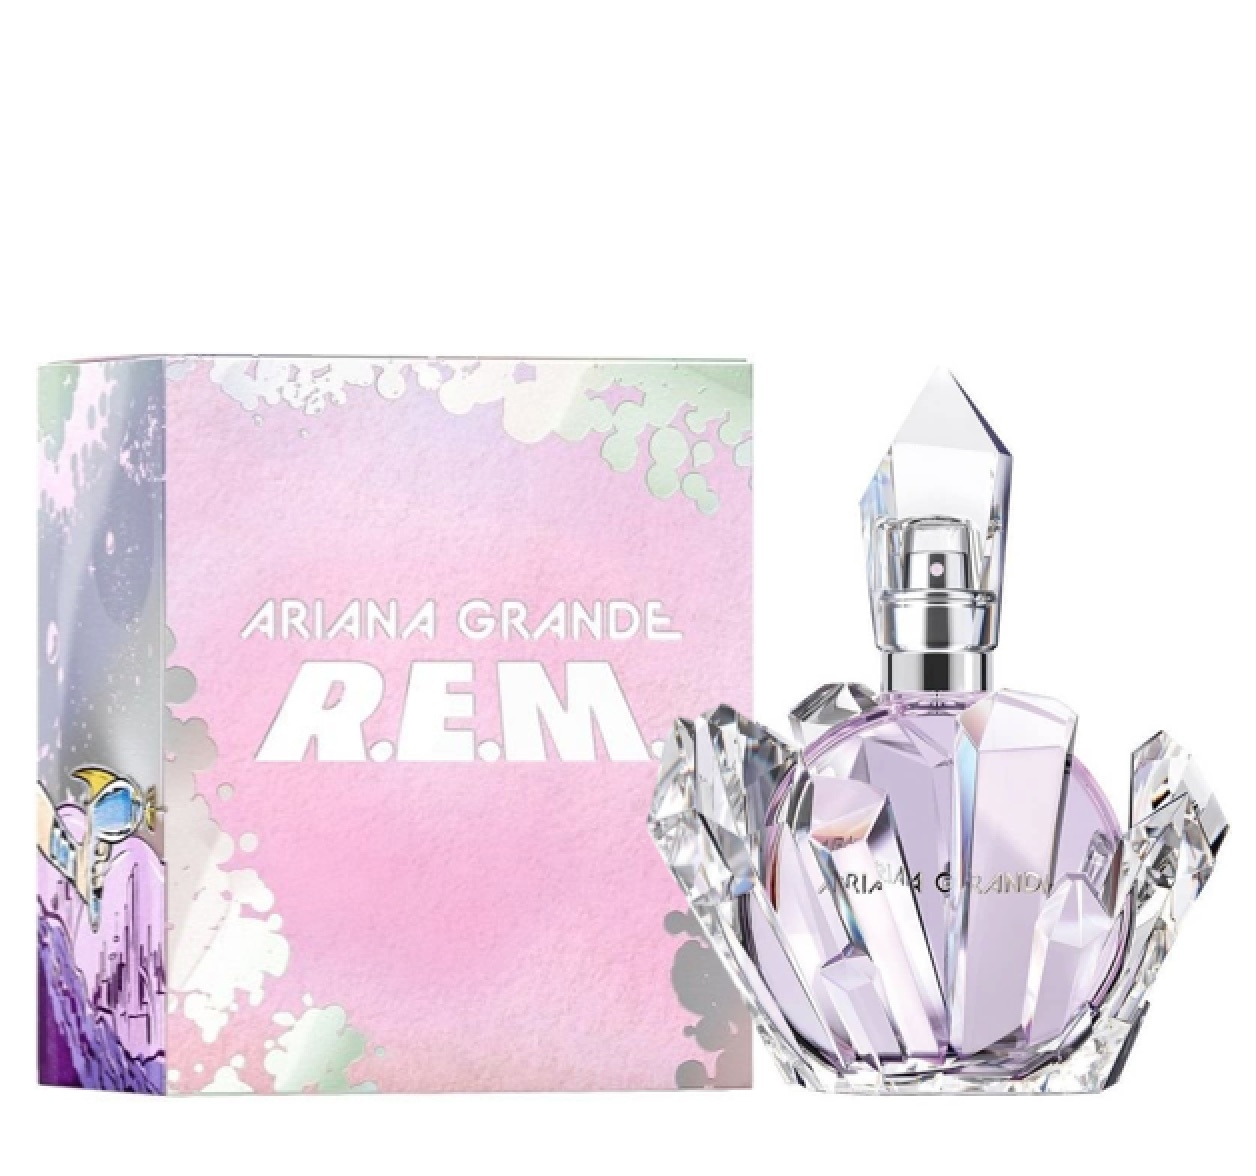 Ariana Grande R.E.M. Eau de Parfum 50ml – Perfume Essence